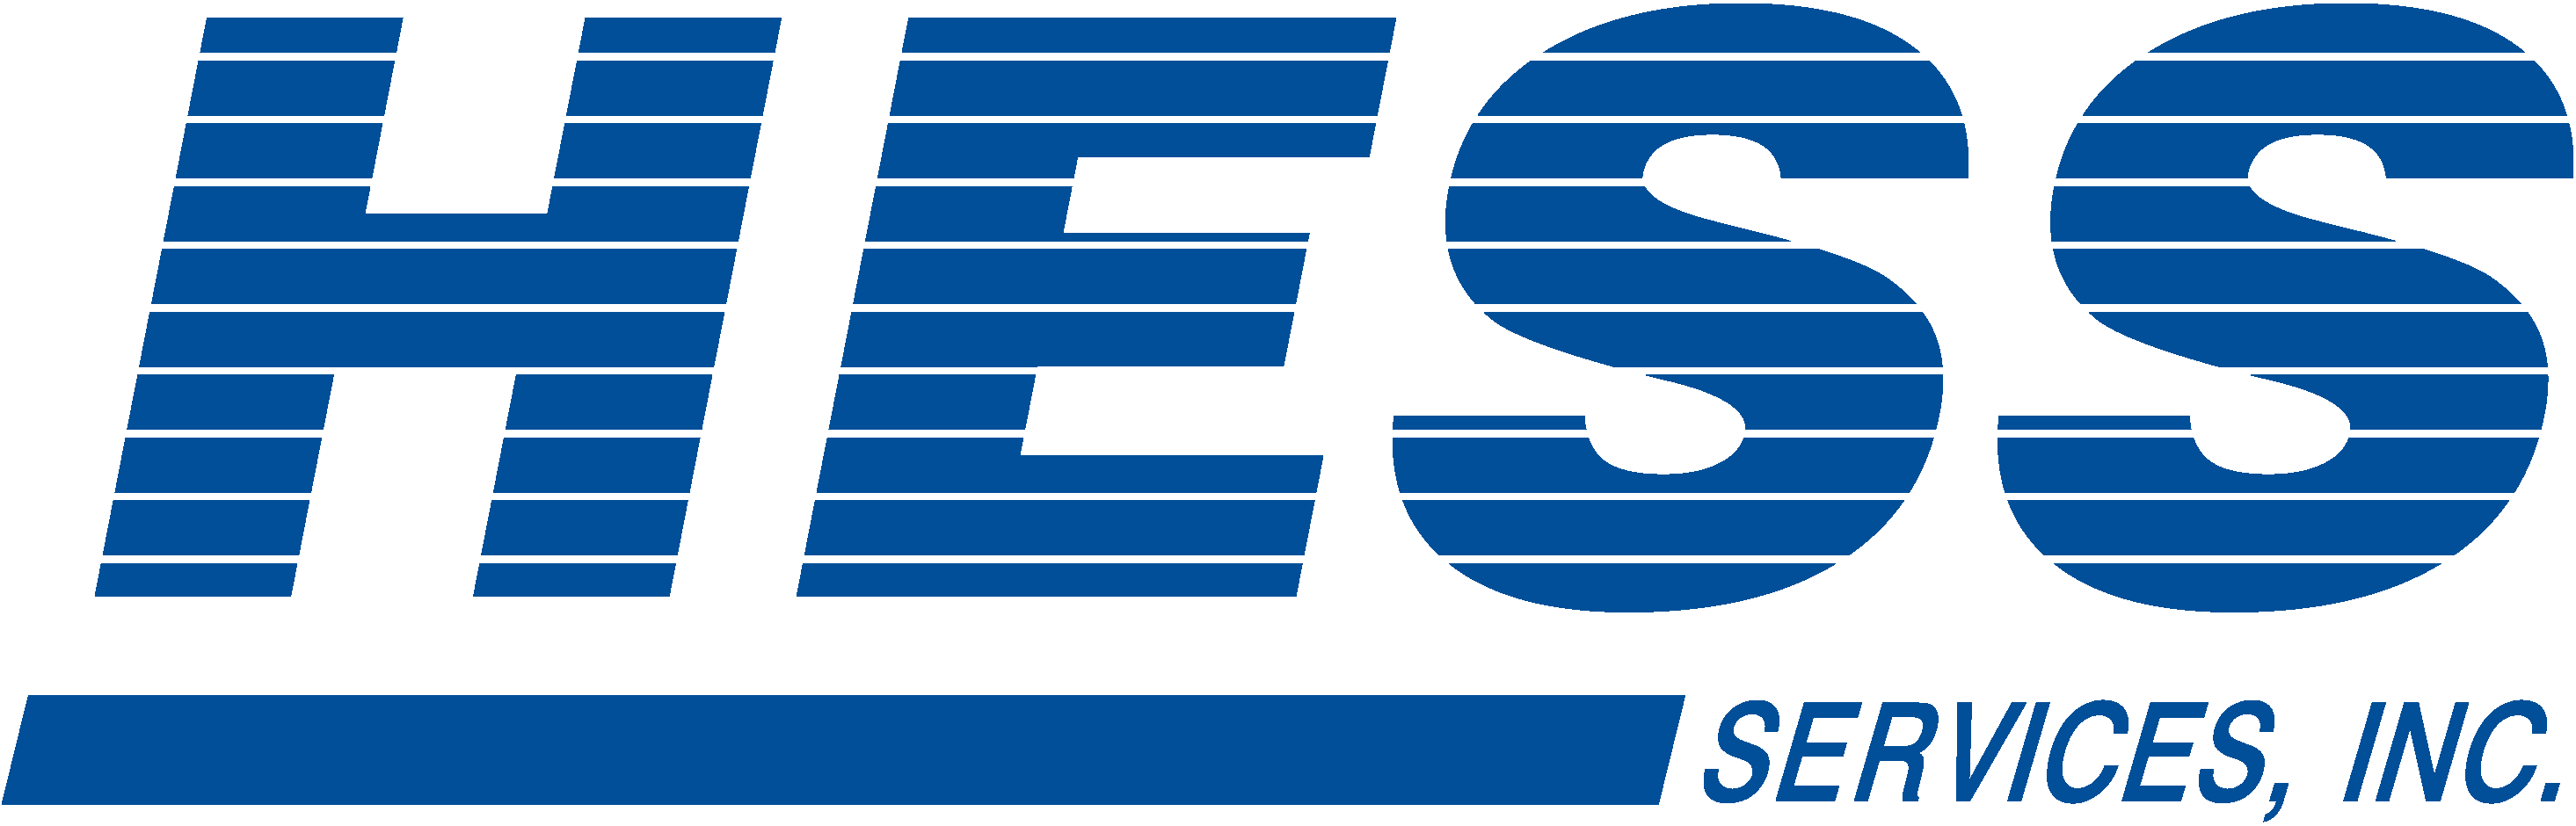 hess-logo-blue-large